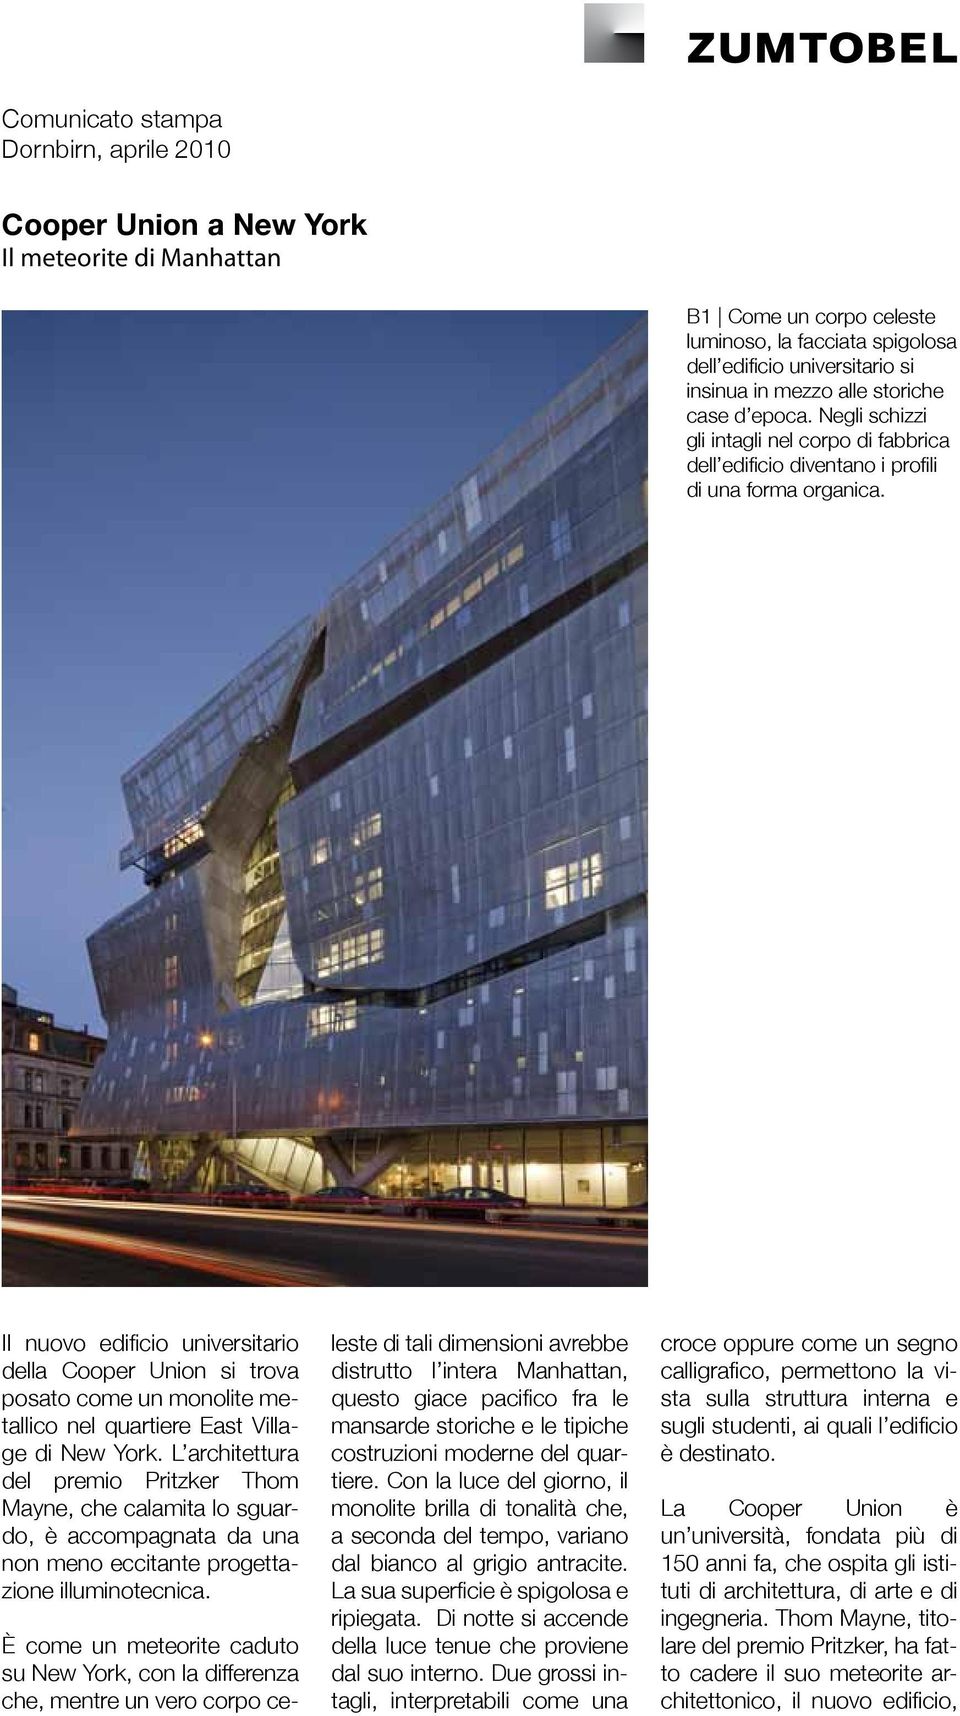 Il nuovo edificio universitario della Cooper Union si trova posato come un monolite metallico nel quartiere East Village di New York.